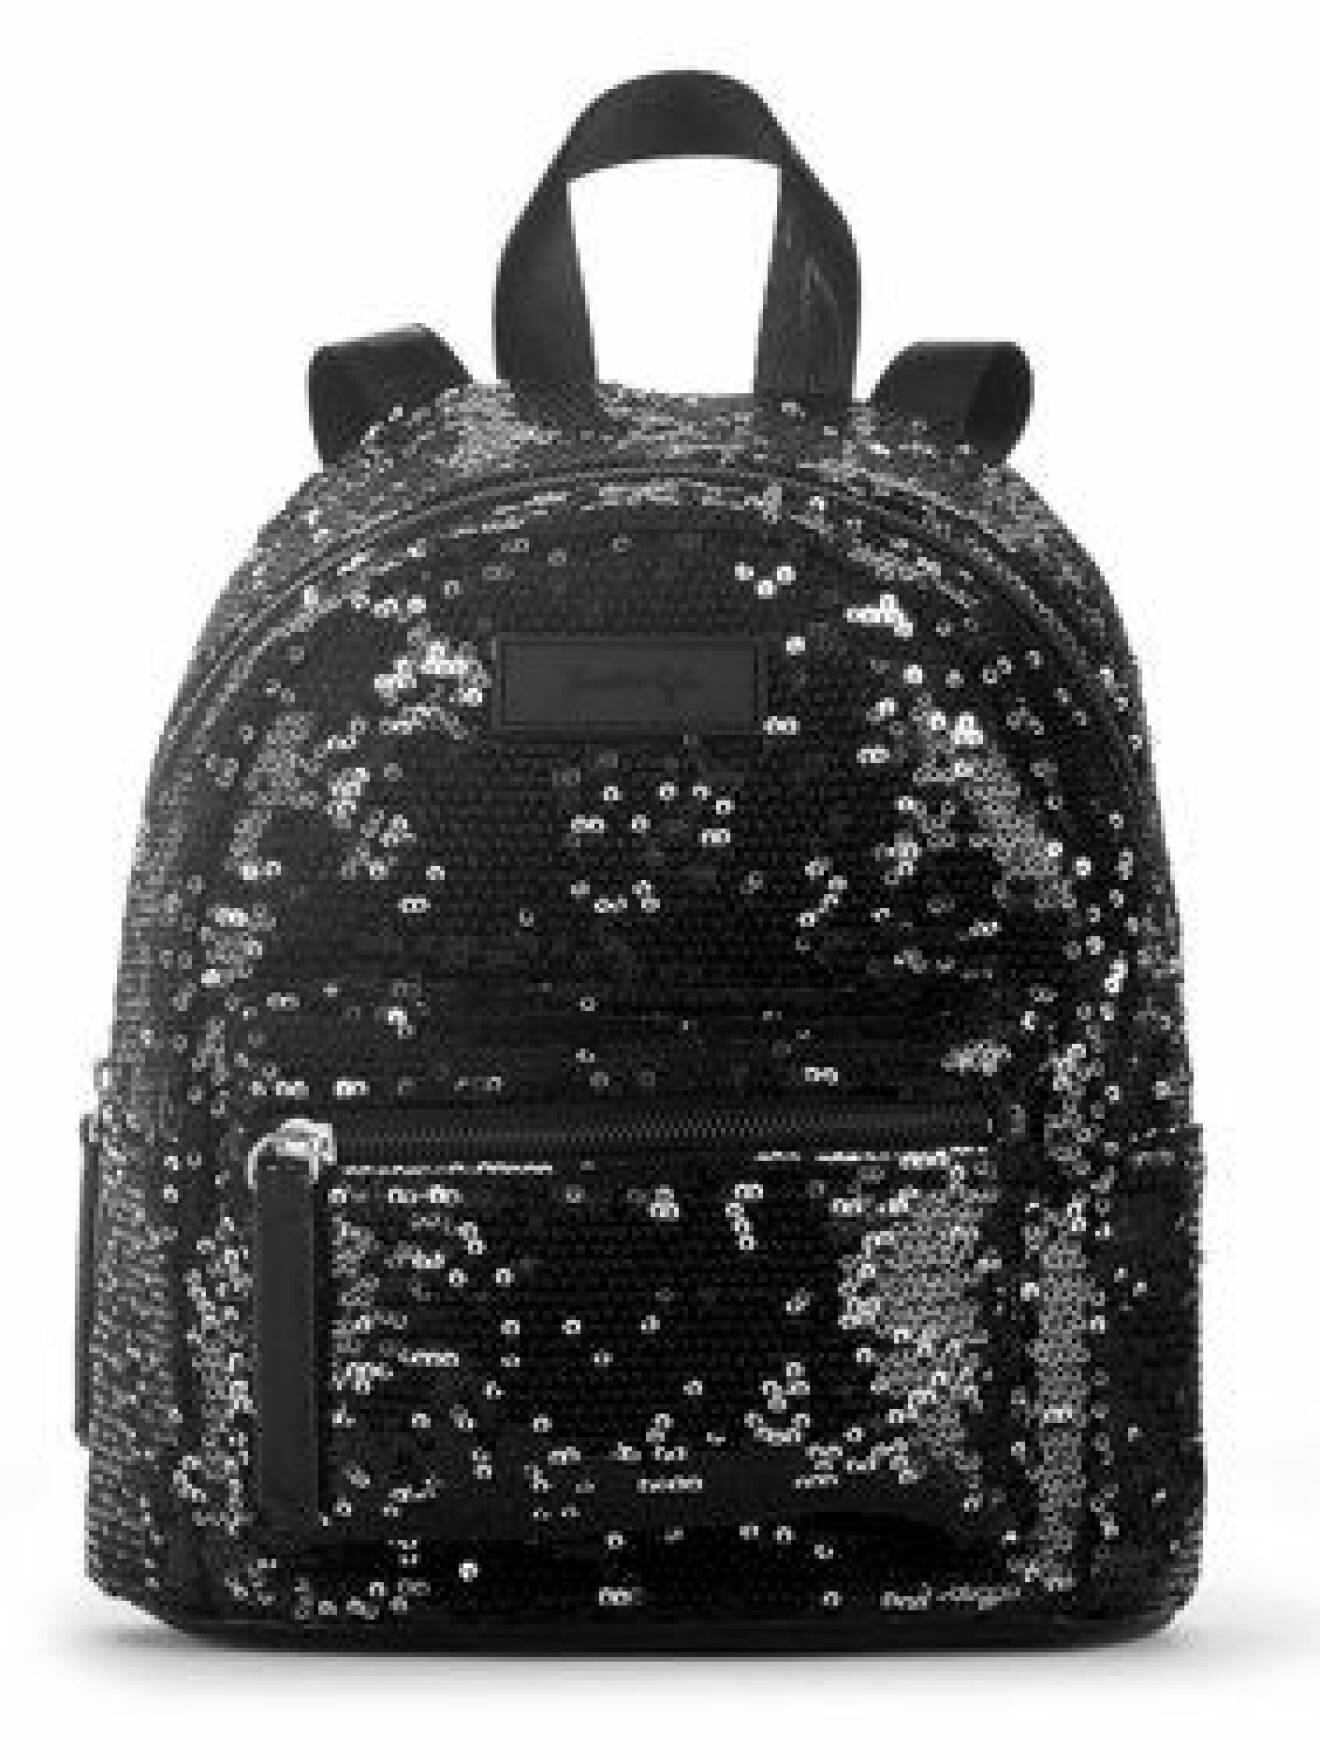 En bild på en ryggsäck med svarta pajletter från Kendall och Kylie Jenners väskkollektion för Walmart.